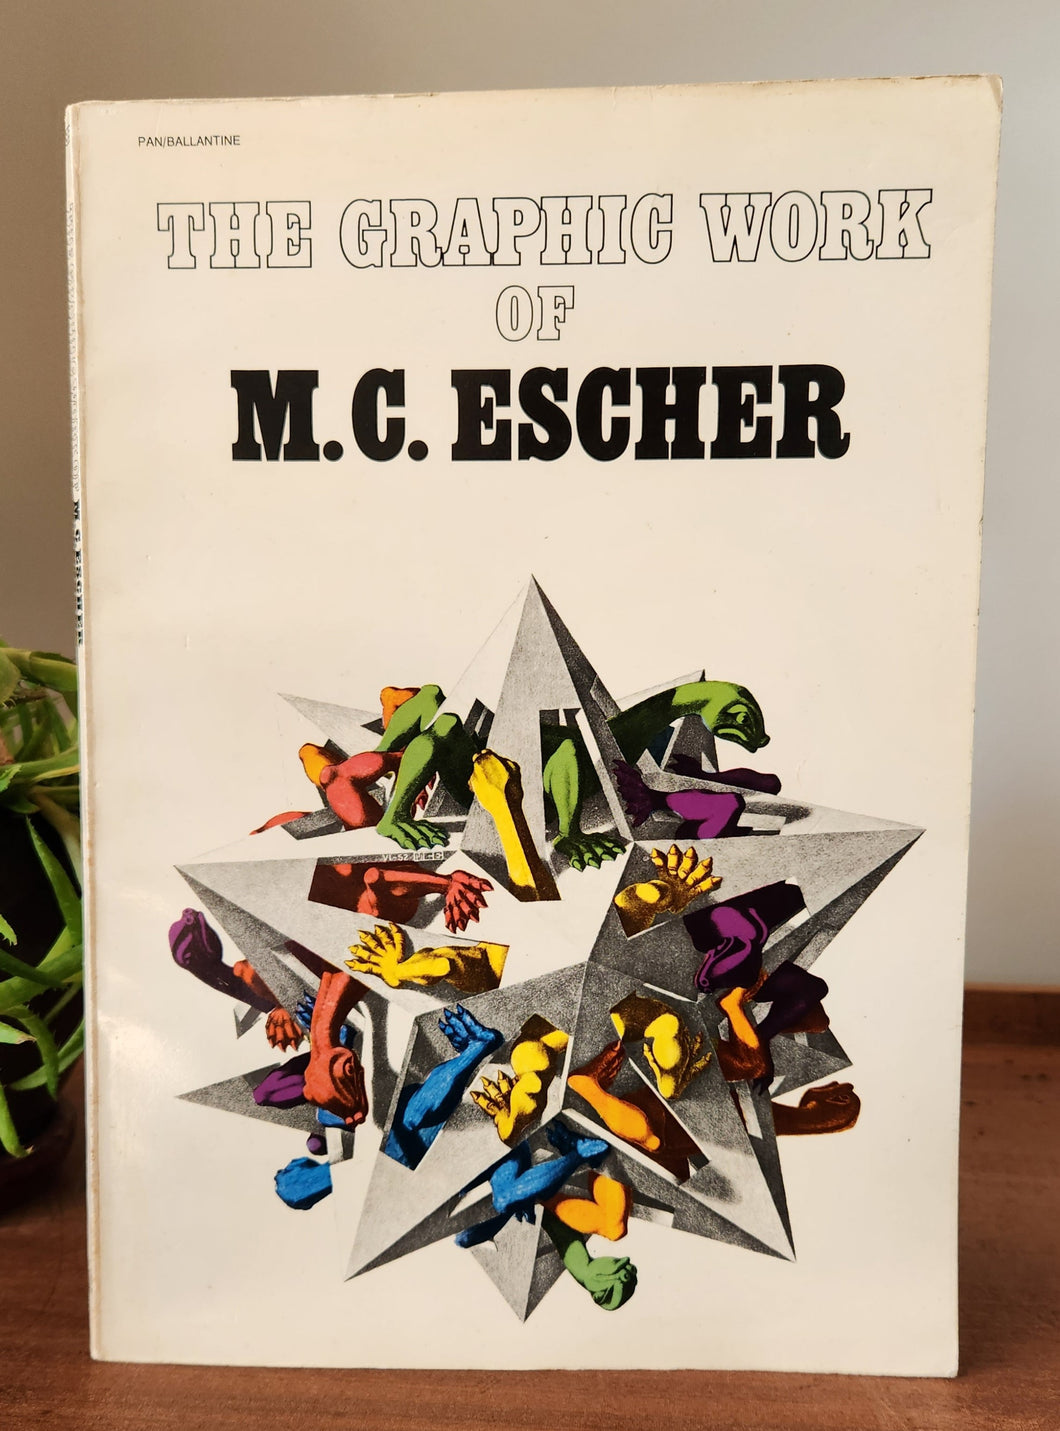 The Graphic Work of M.C. Escher